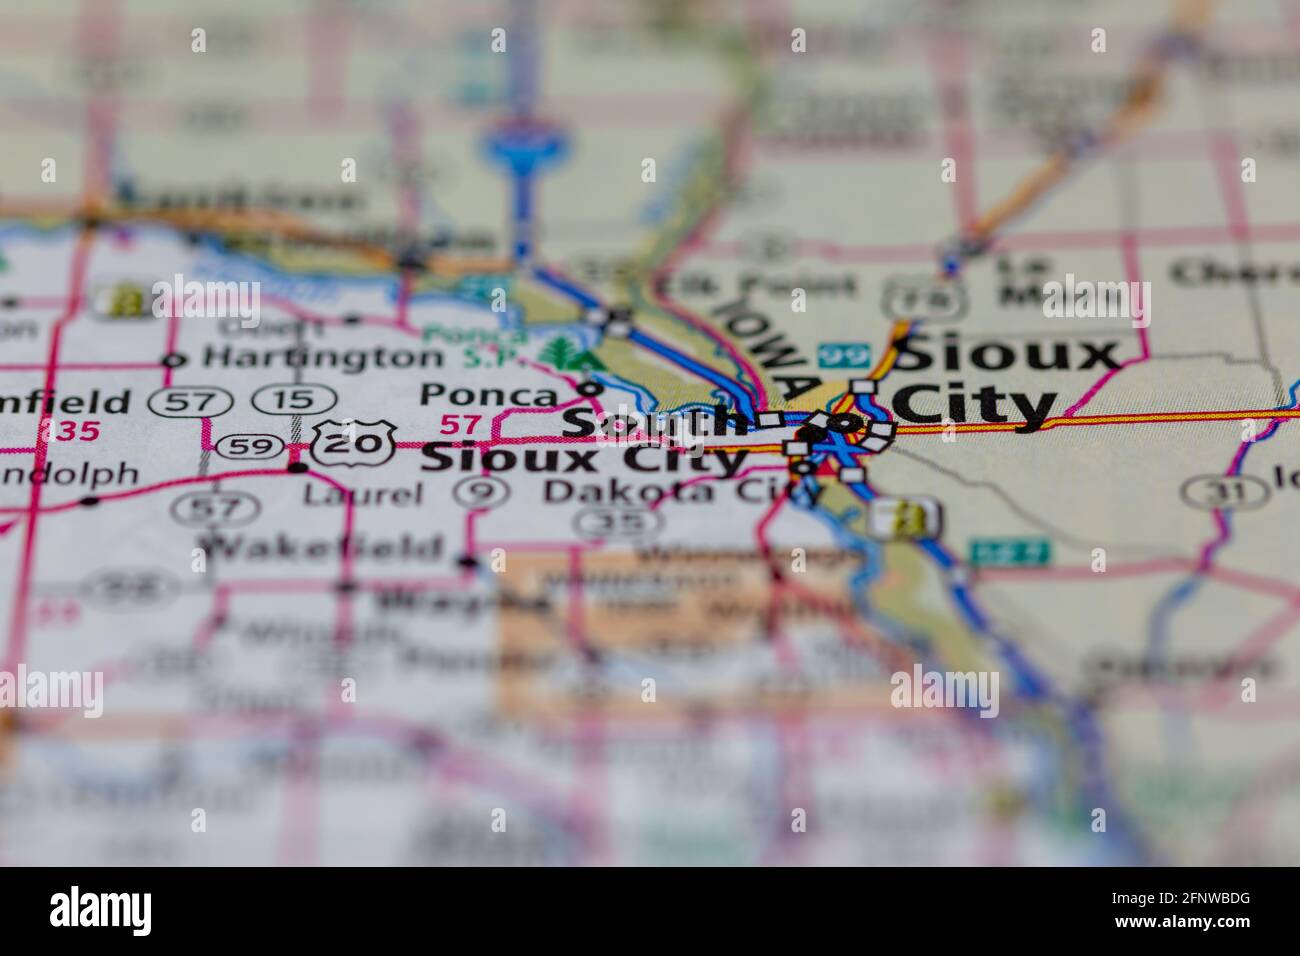 South Sioux City Nebraska USA mostrato su una mappa geografica O Mappa stradale Foto Stock